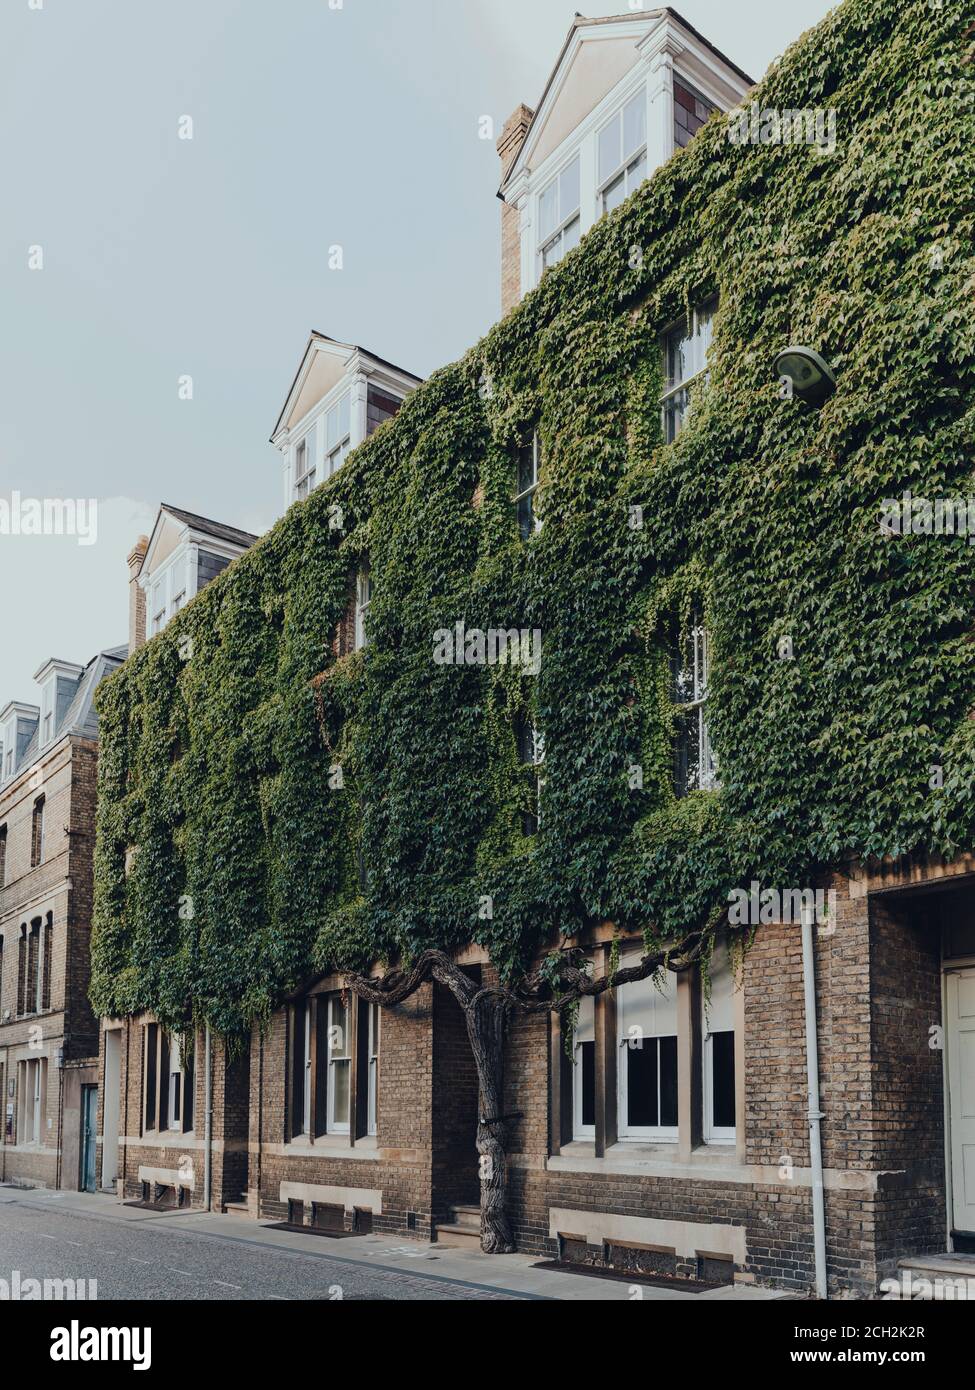 Oxford, Großbritannien - 04. August 2020: Seitenansicht eines Gebäudes an der New Inn Hall Street in Oxford, einer Stadt in England, die für ihre prestigeträchtige Universität berühmt ist Stockfoto